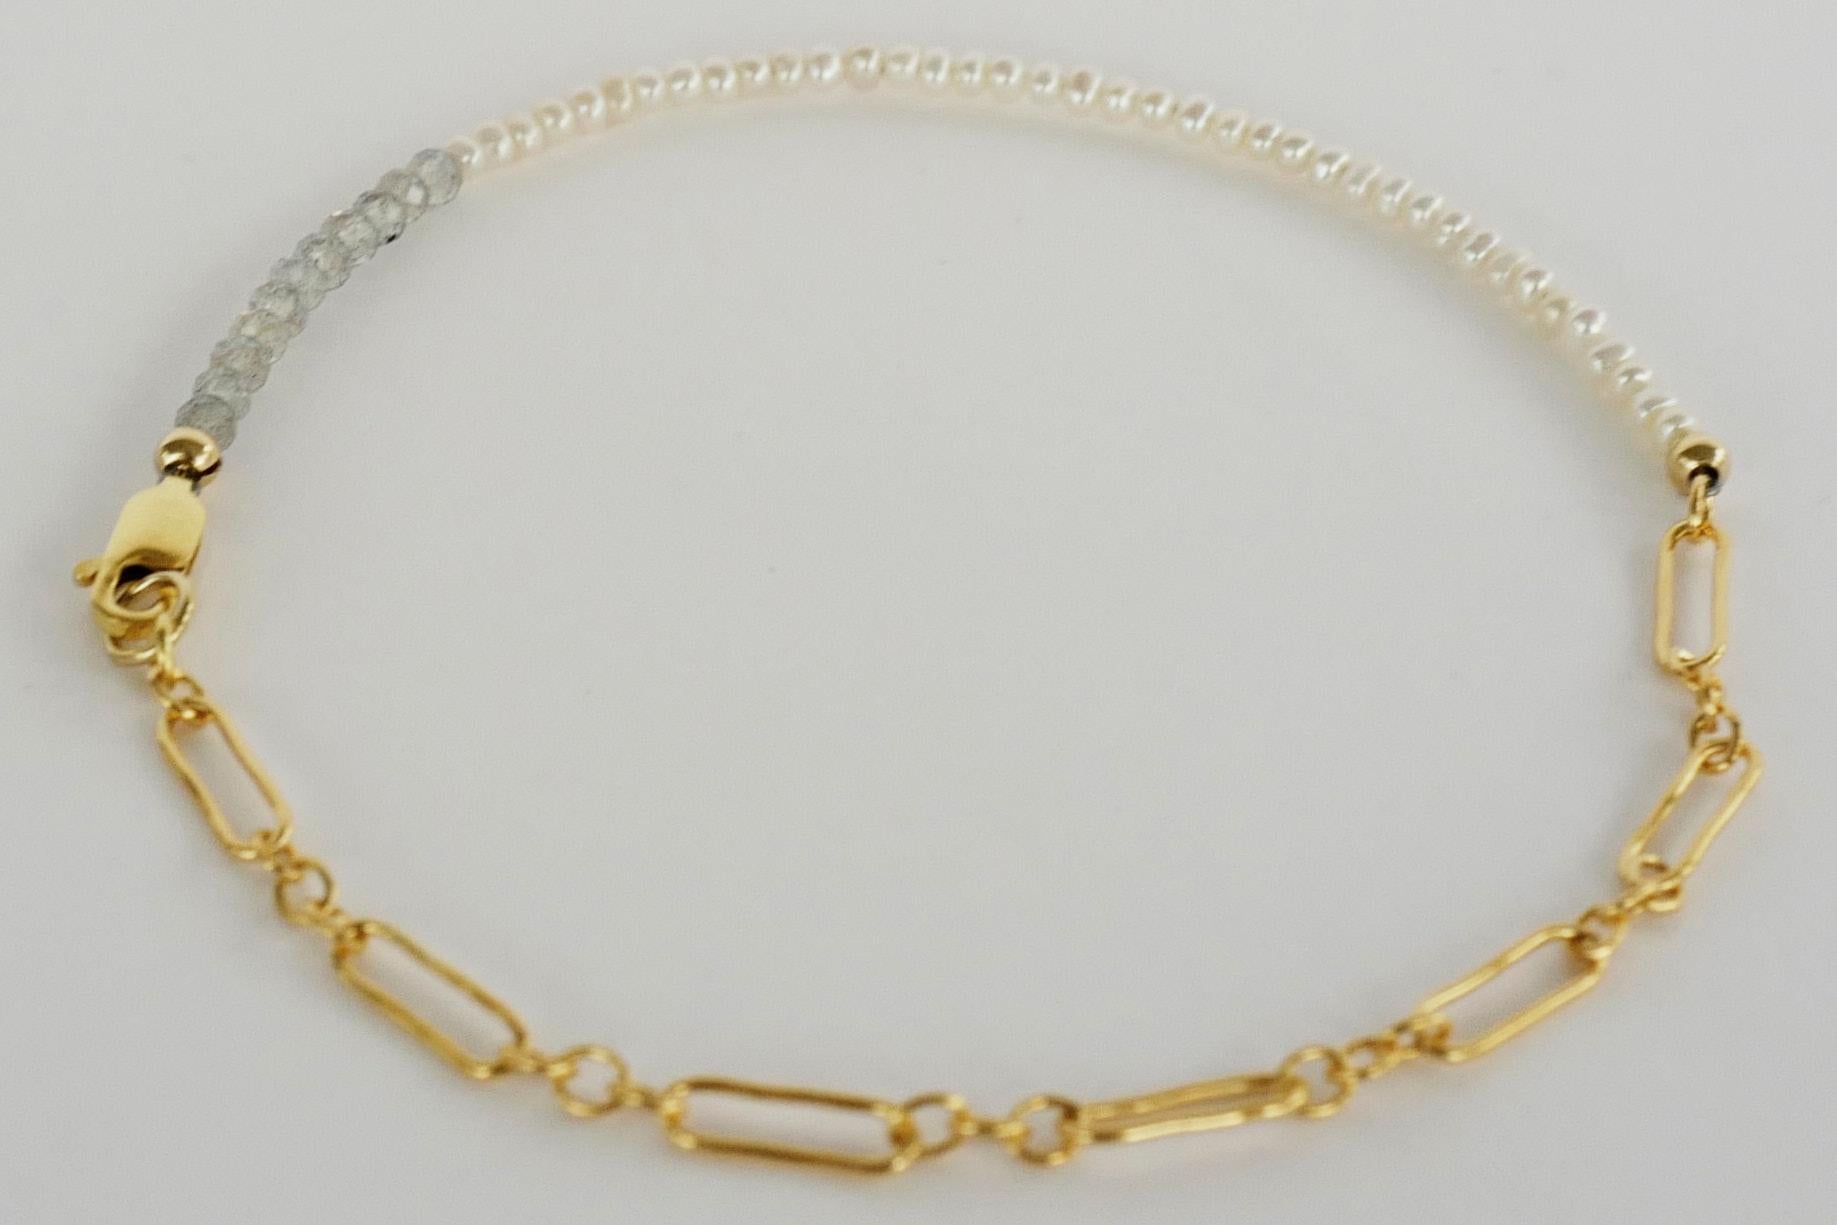 Weiße Perle Labradorit Knöchel-Armband Perlen Gold gefüllt Kette J Dauphin
kann auch als Armband verwendet werden, da die Kette verstellbar ist

